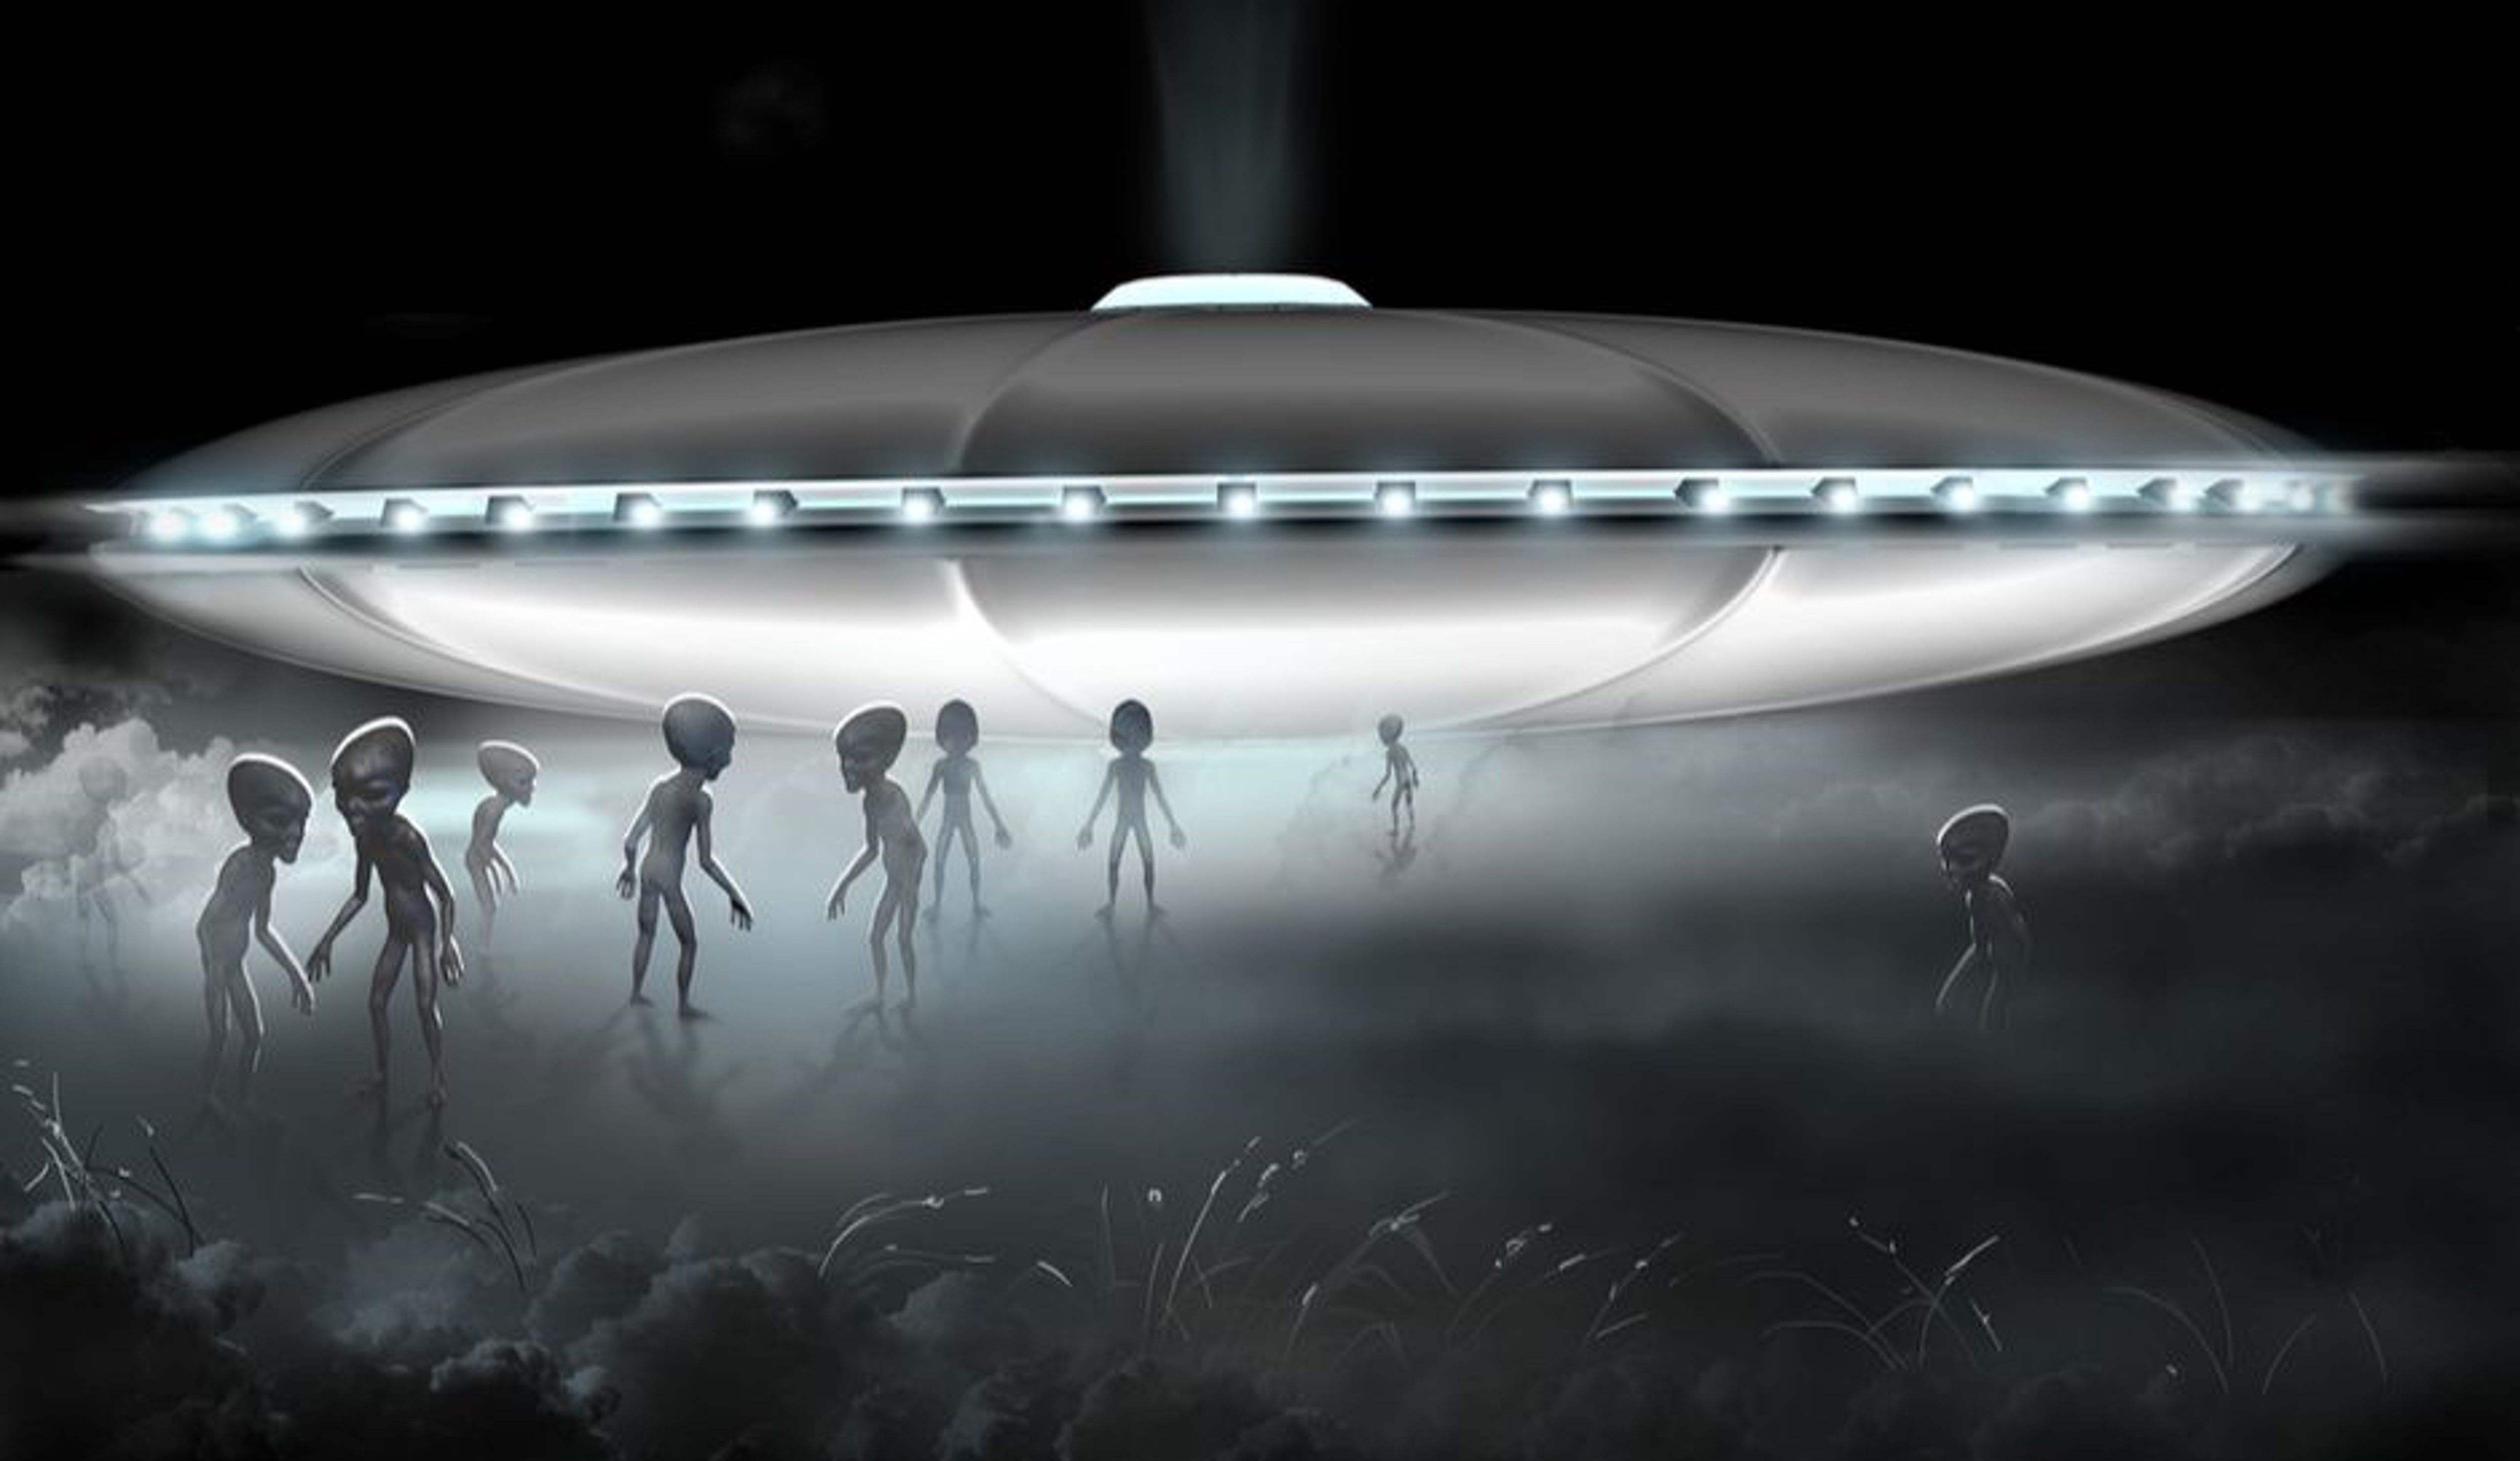 美国正致力寻找外星人?共和党参议员证实美国存在ufo特别工作组